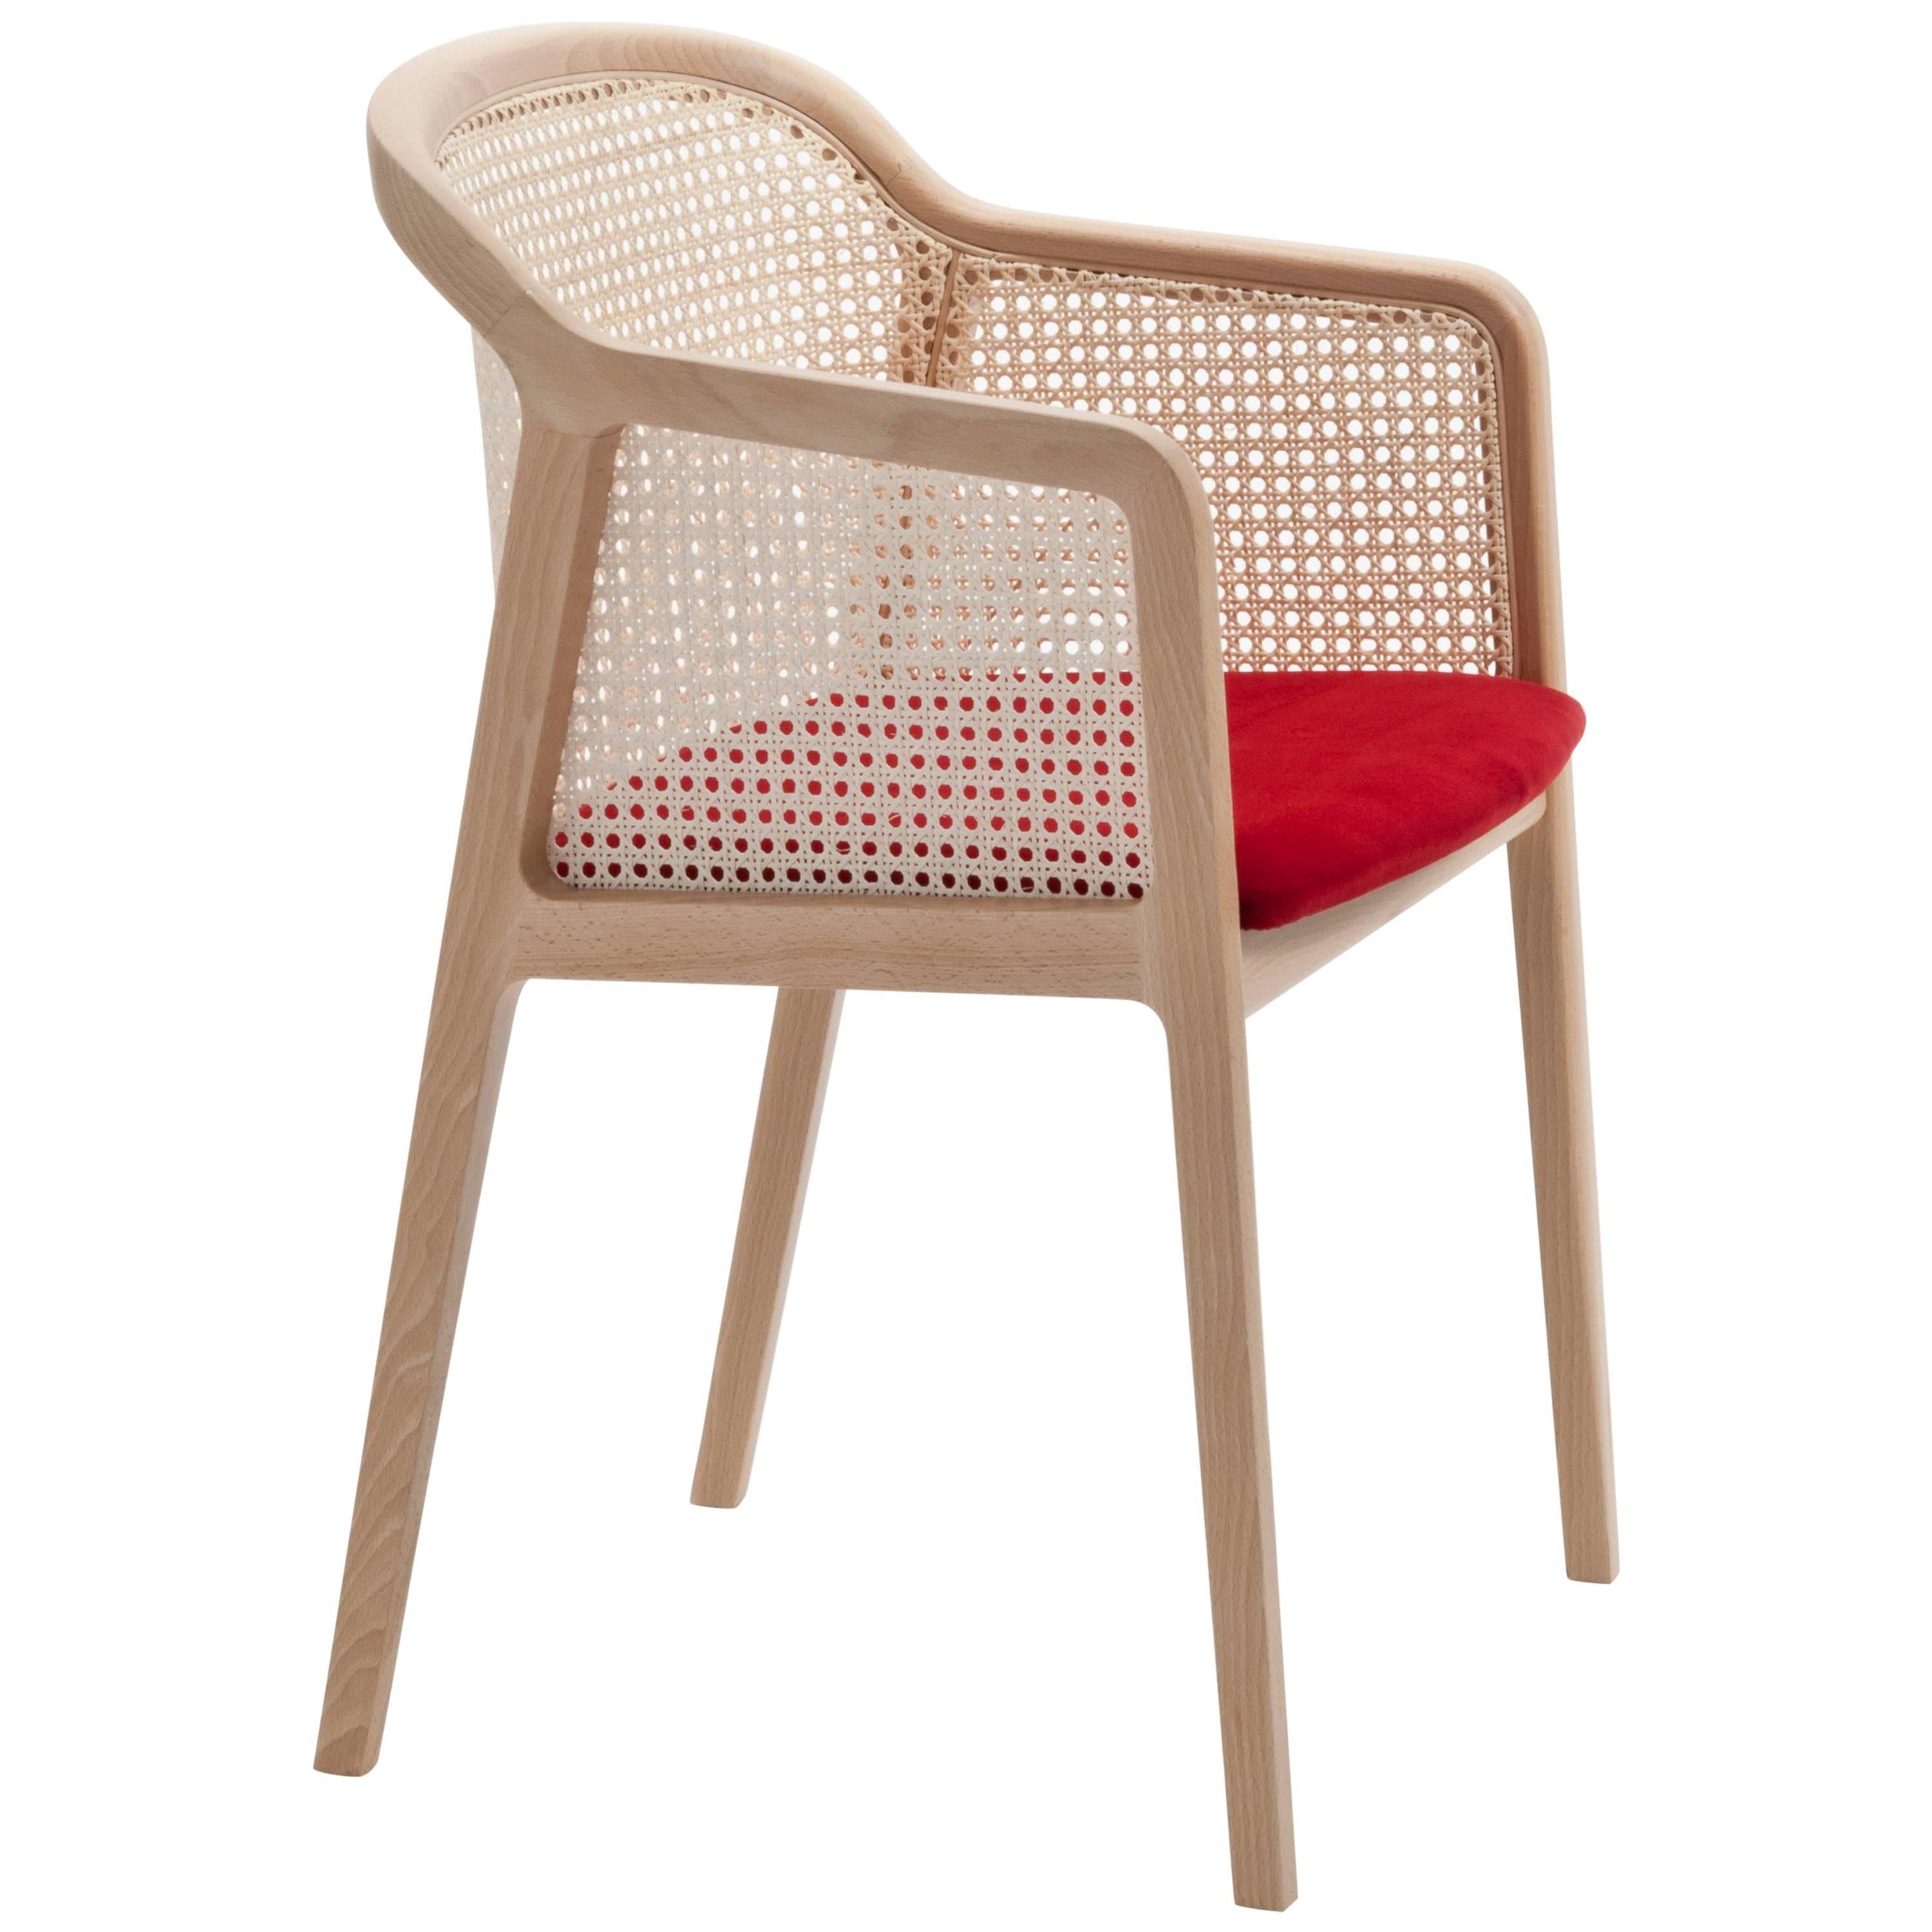 Vienna est un fauteuil extraordinairement confortable et élégant conçu par Emmanuel Gallina qui aime citer Brancusi en disant que 